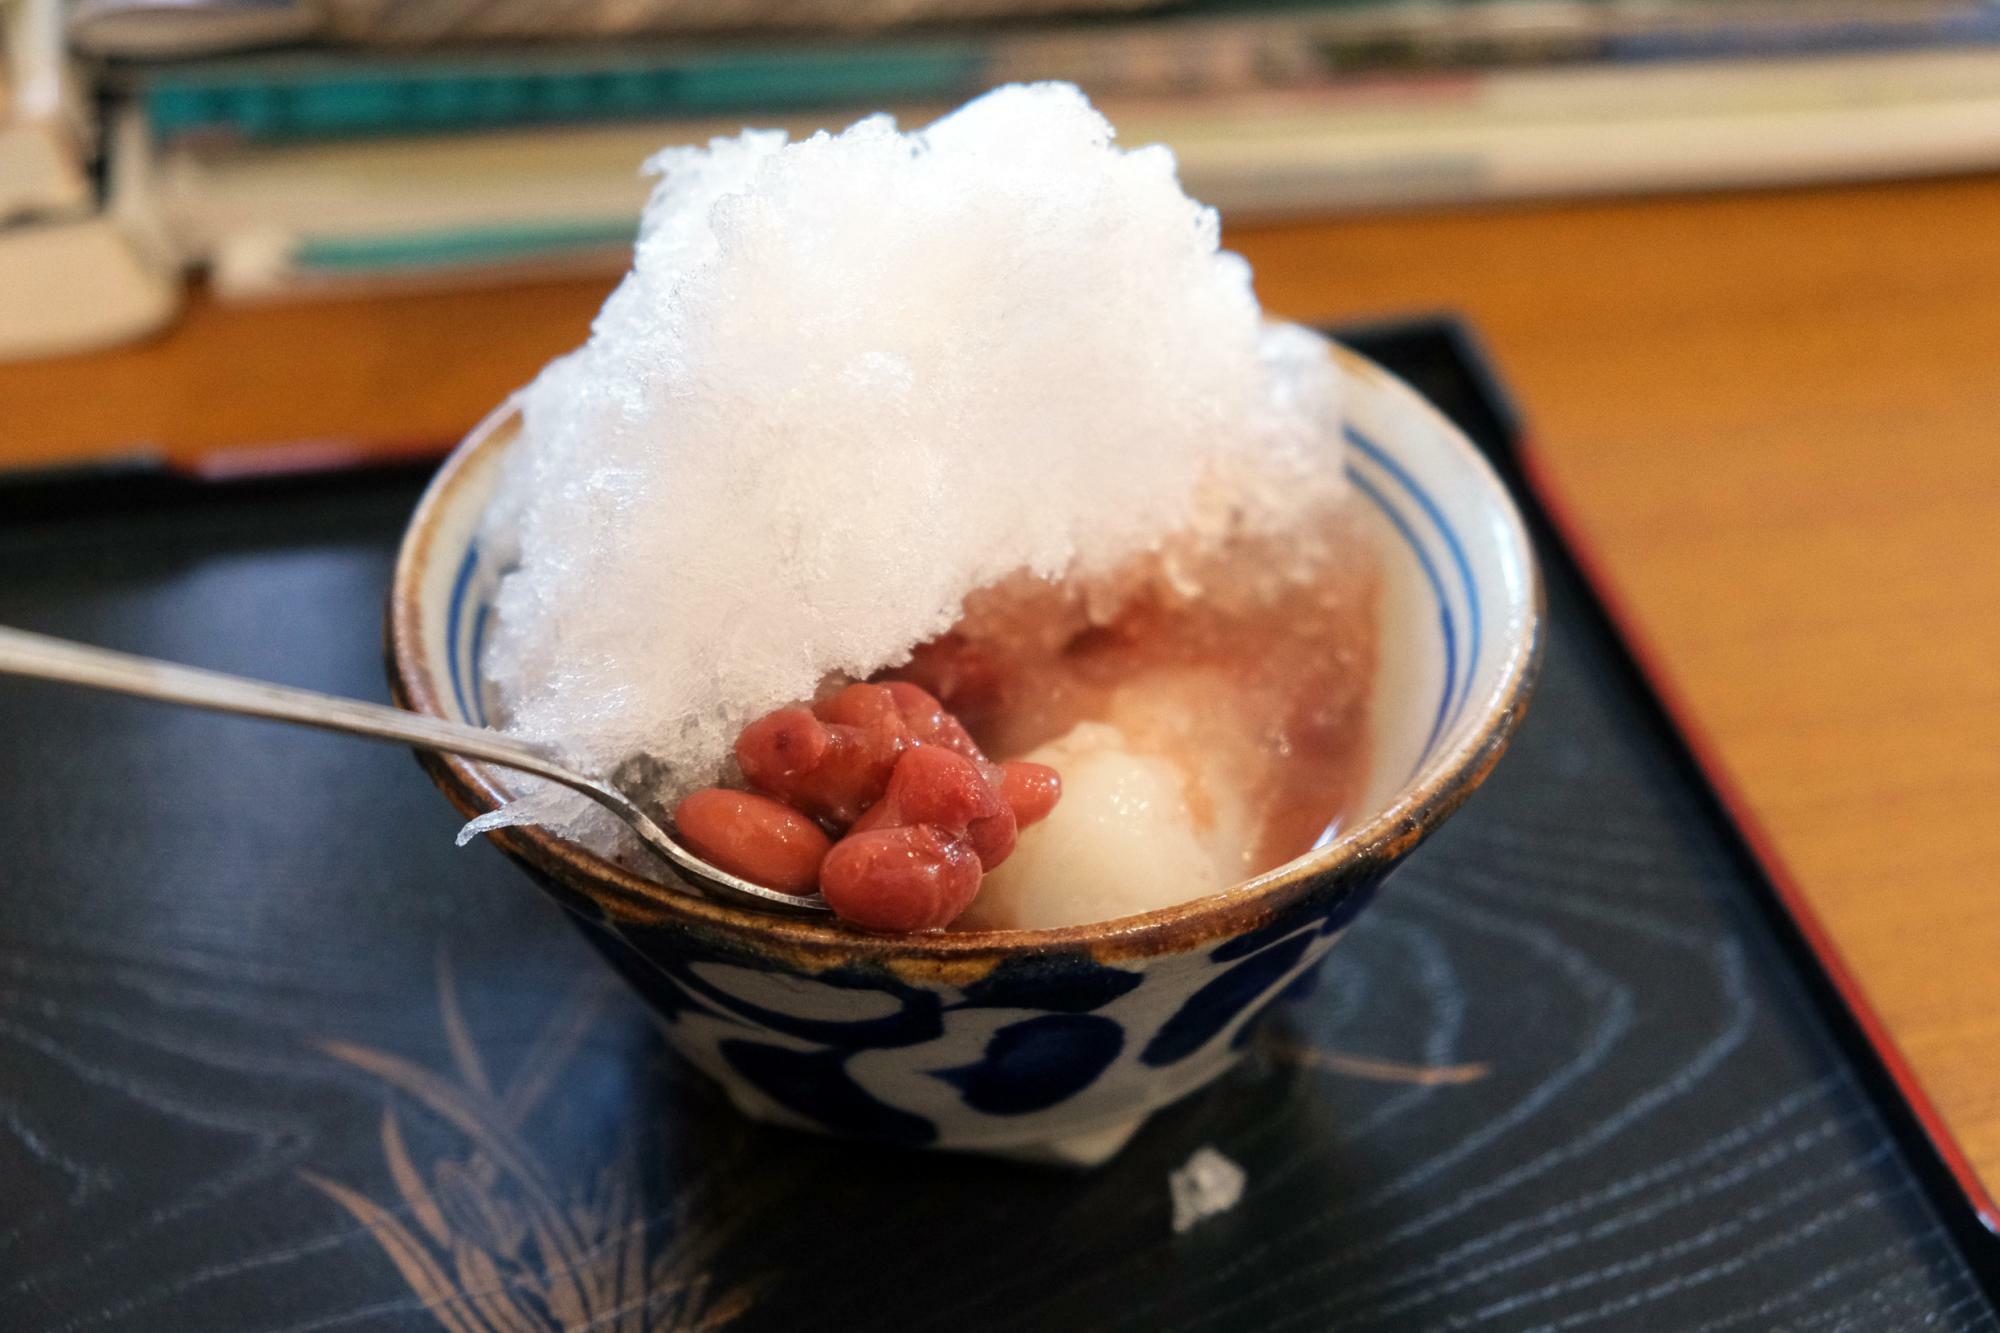 「アイスぜんざい」(沖縄)は金時豆を使用